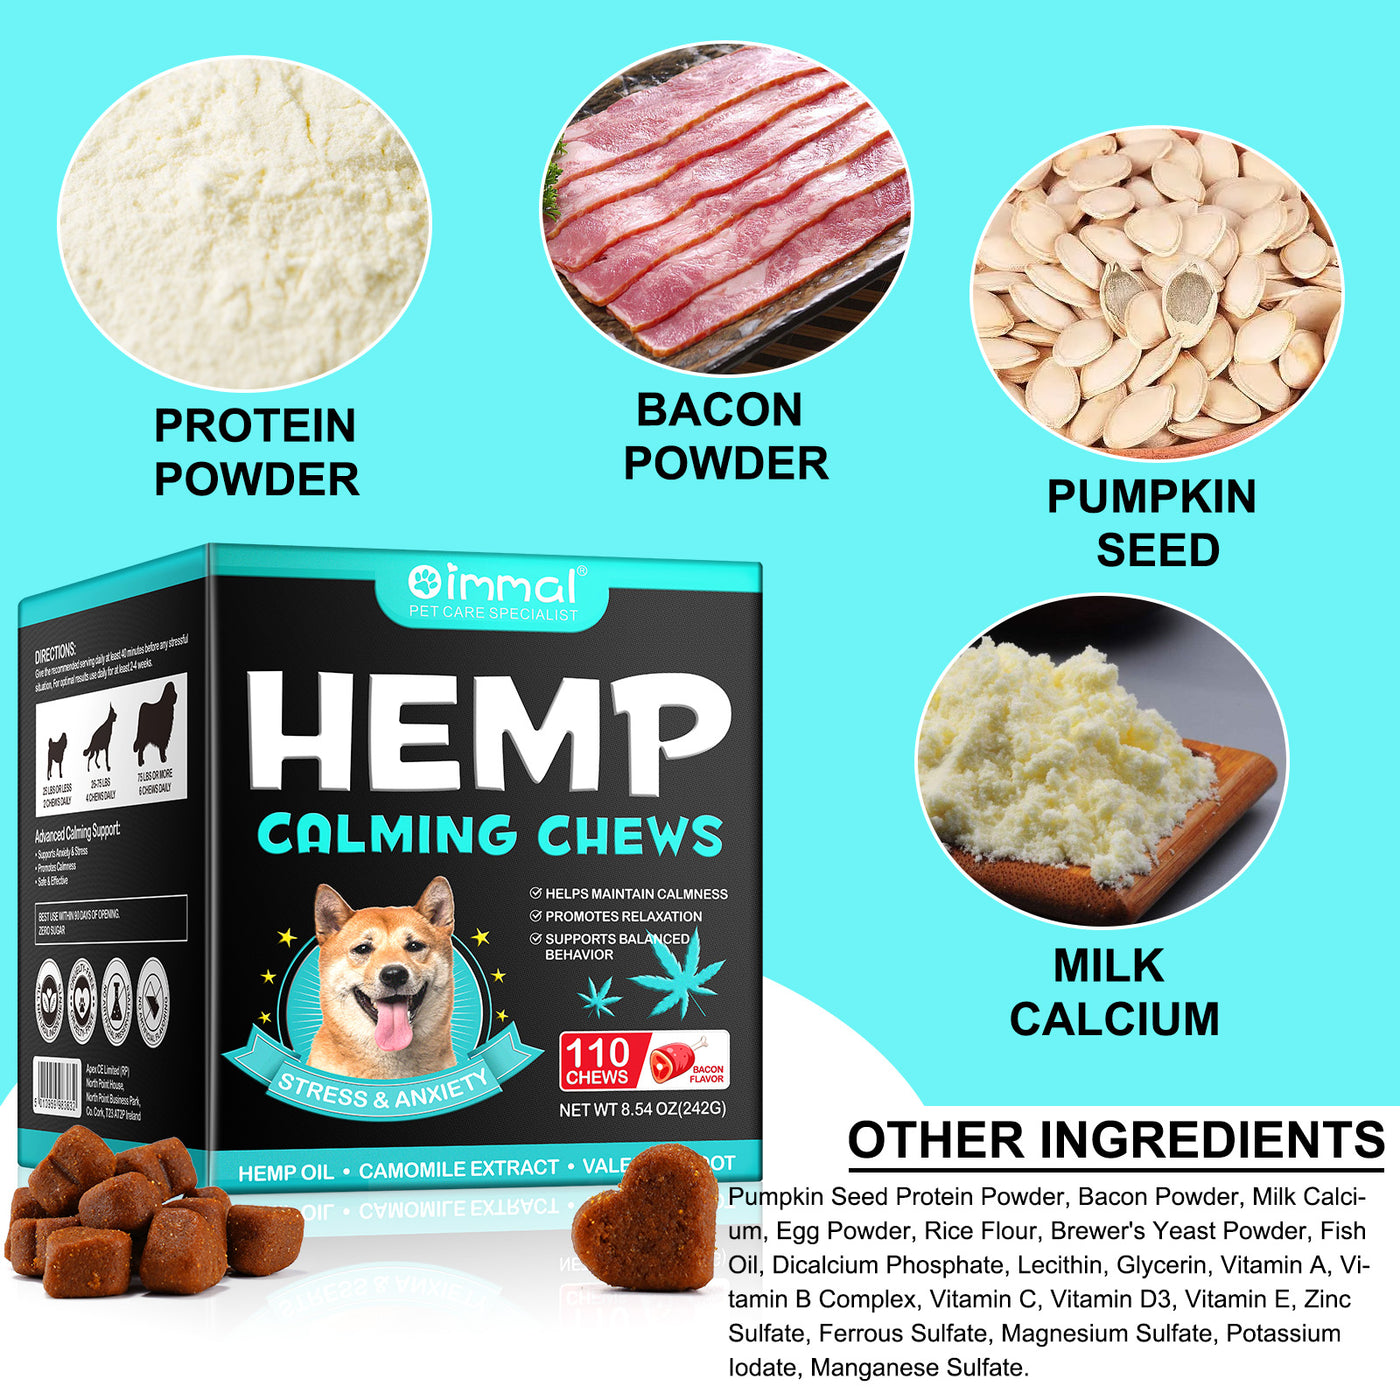 Oimmal Hemp Calming Chews / Bacon Flavor - 3 Packs